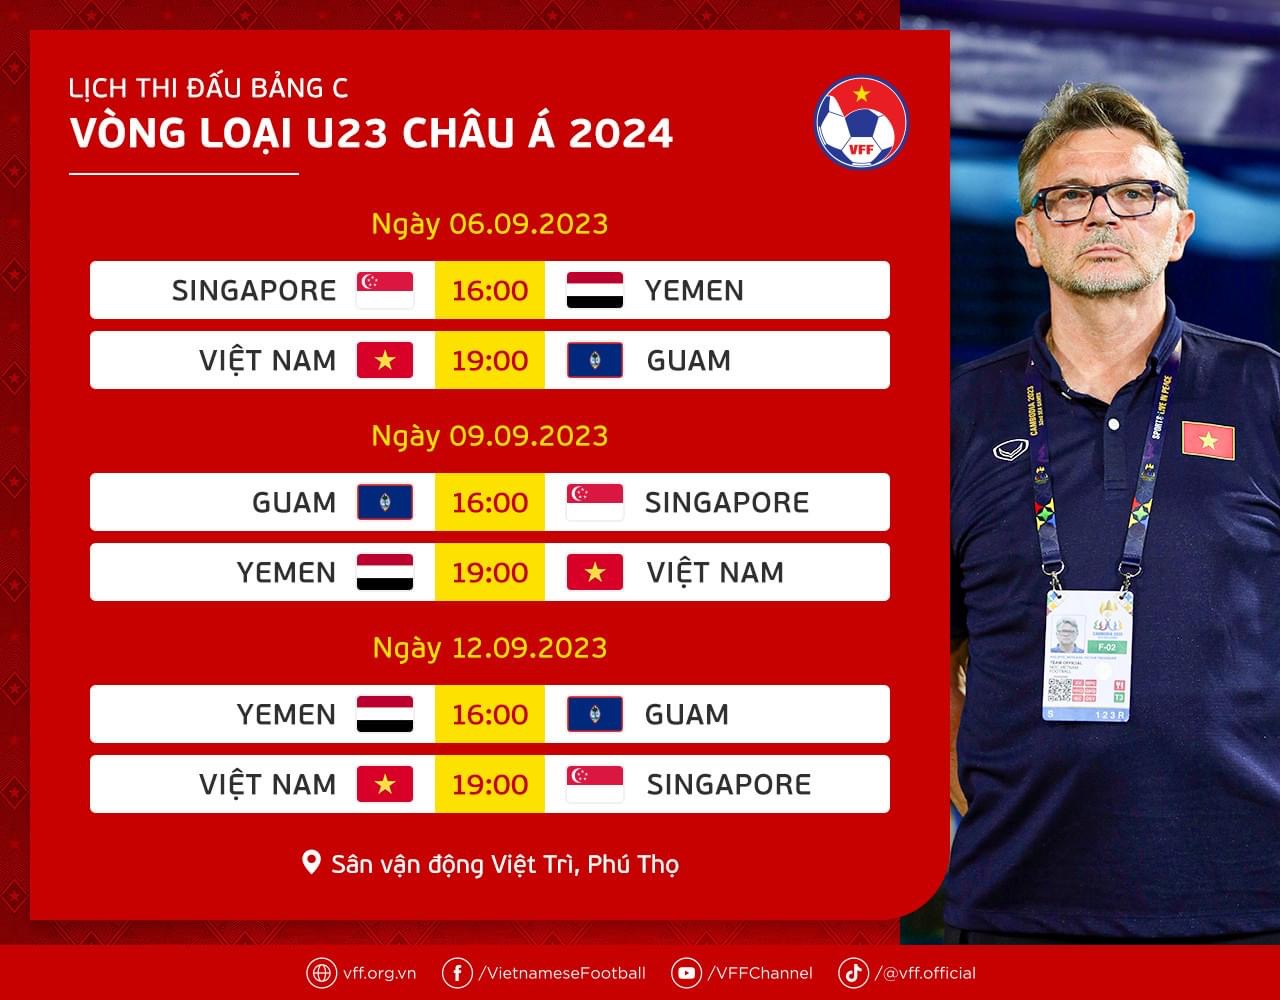 Lịch thi đấu vòng loại U23 châu Á 2024 tại bảng đấu của U23 Việt Nam, Yemen, Singapore và Guam. Ảnh: VFF